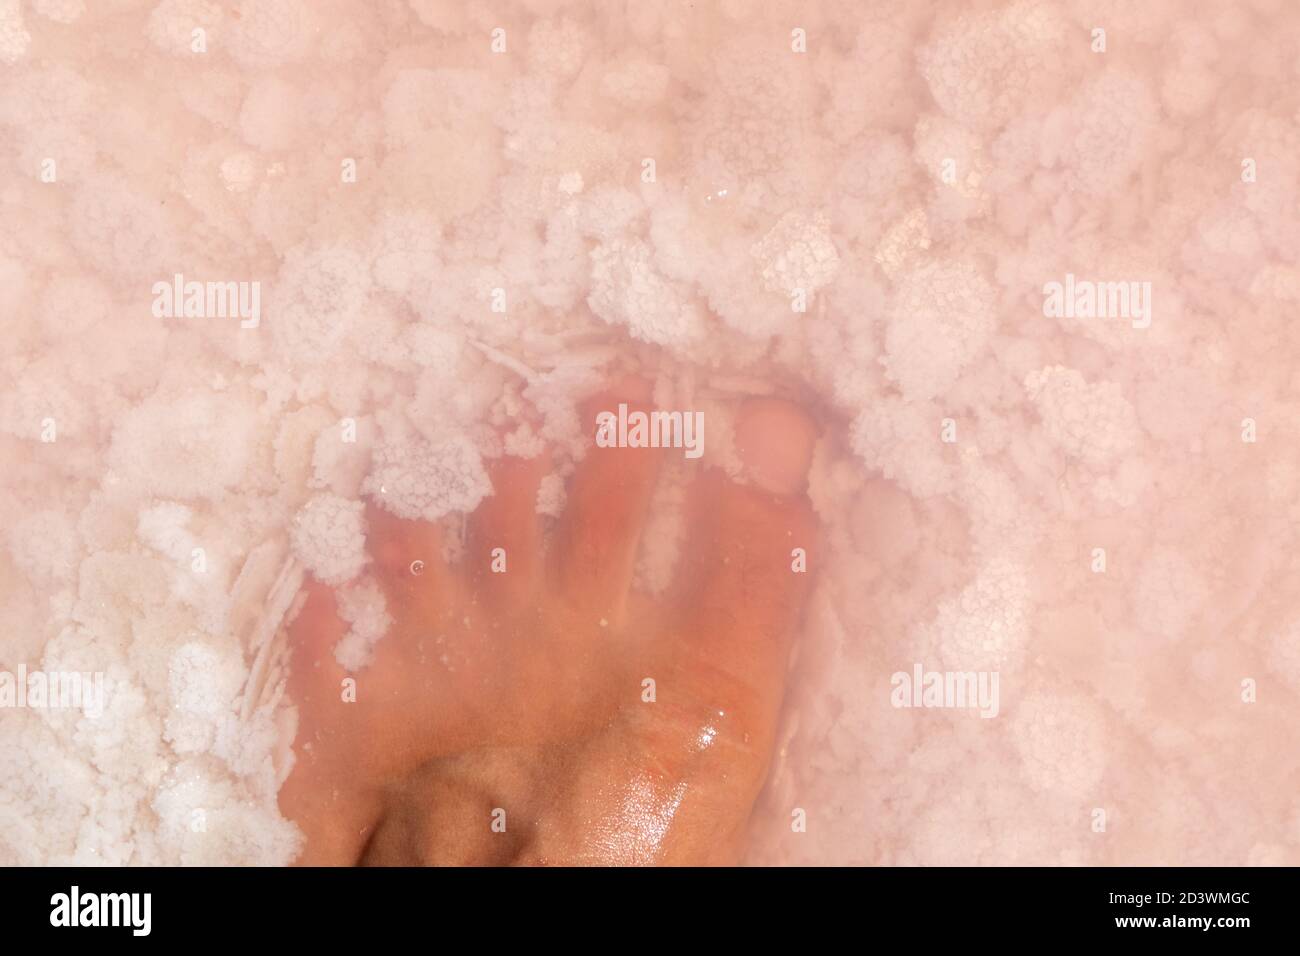 Mann Bein Fuß Finger Nahaufnahme in rosa Salzflocken Draufsicht unter rosa Wasseroberfläche. Gesunde Spa-Behandlungen auf Syvash Resort, der Putrid See oder Rotten Stockfoto